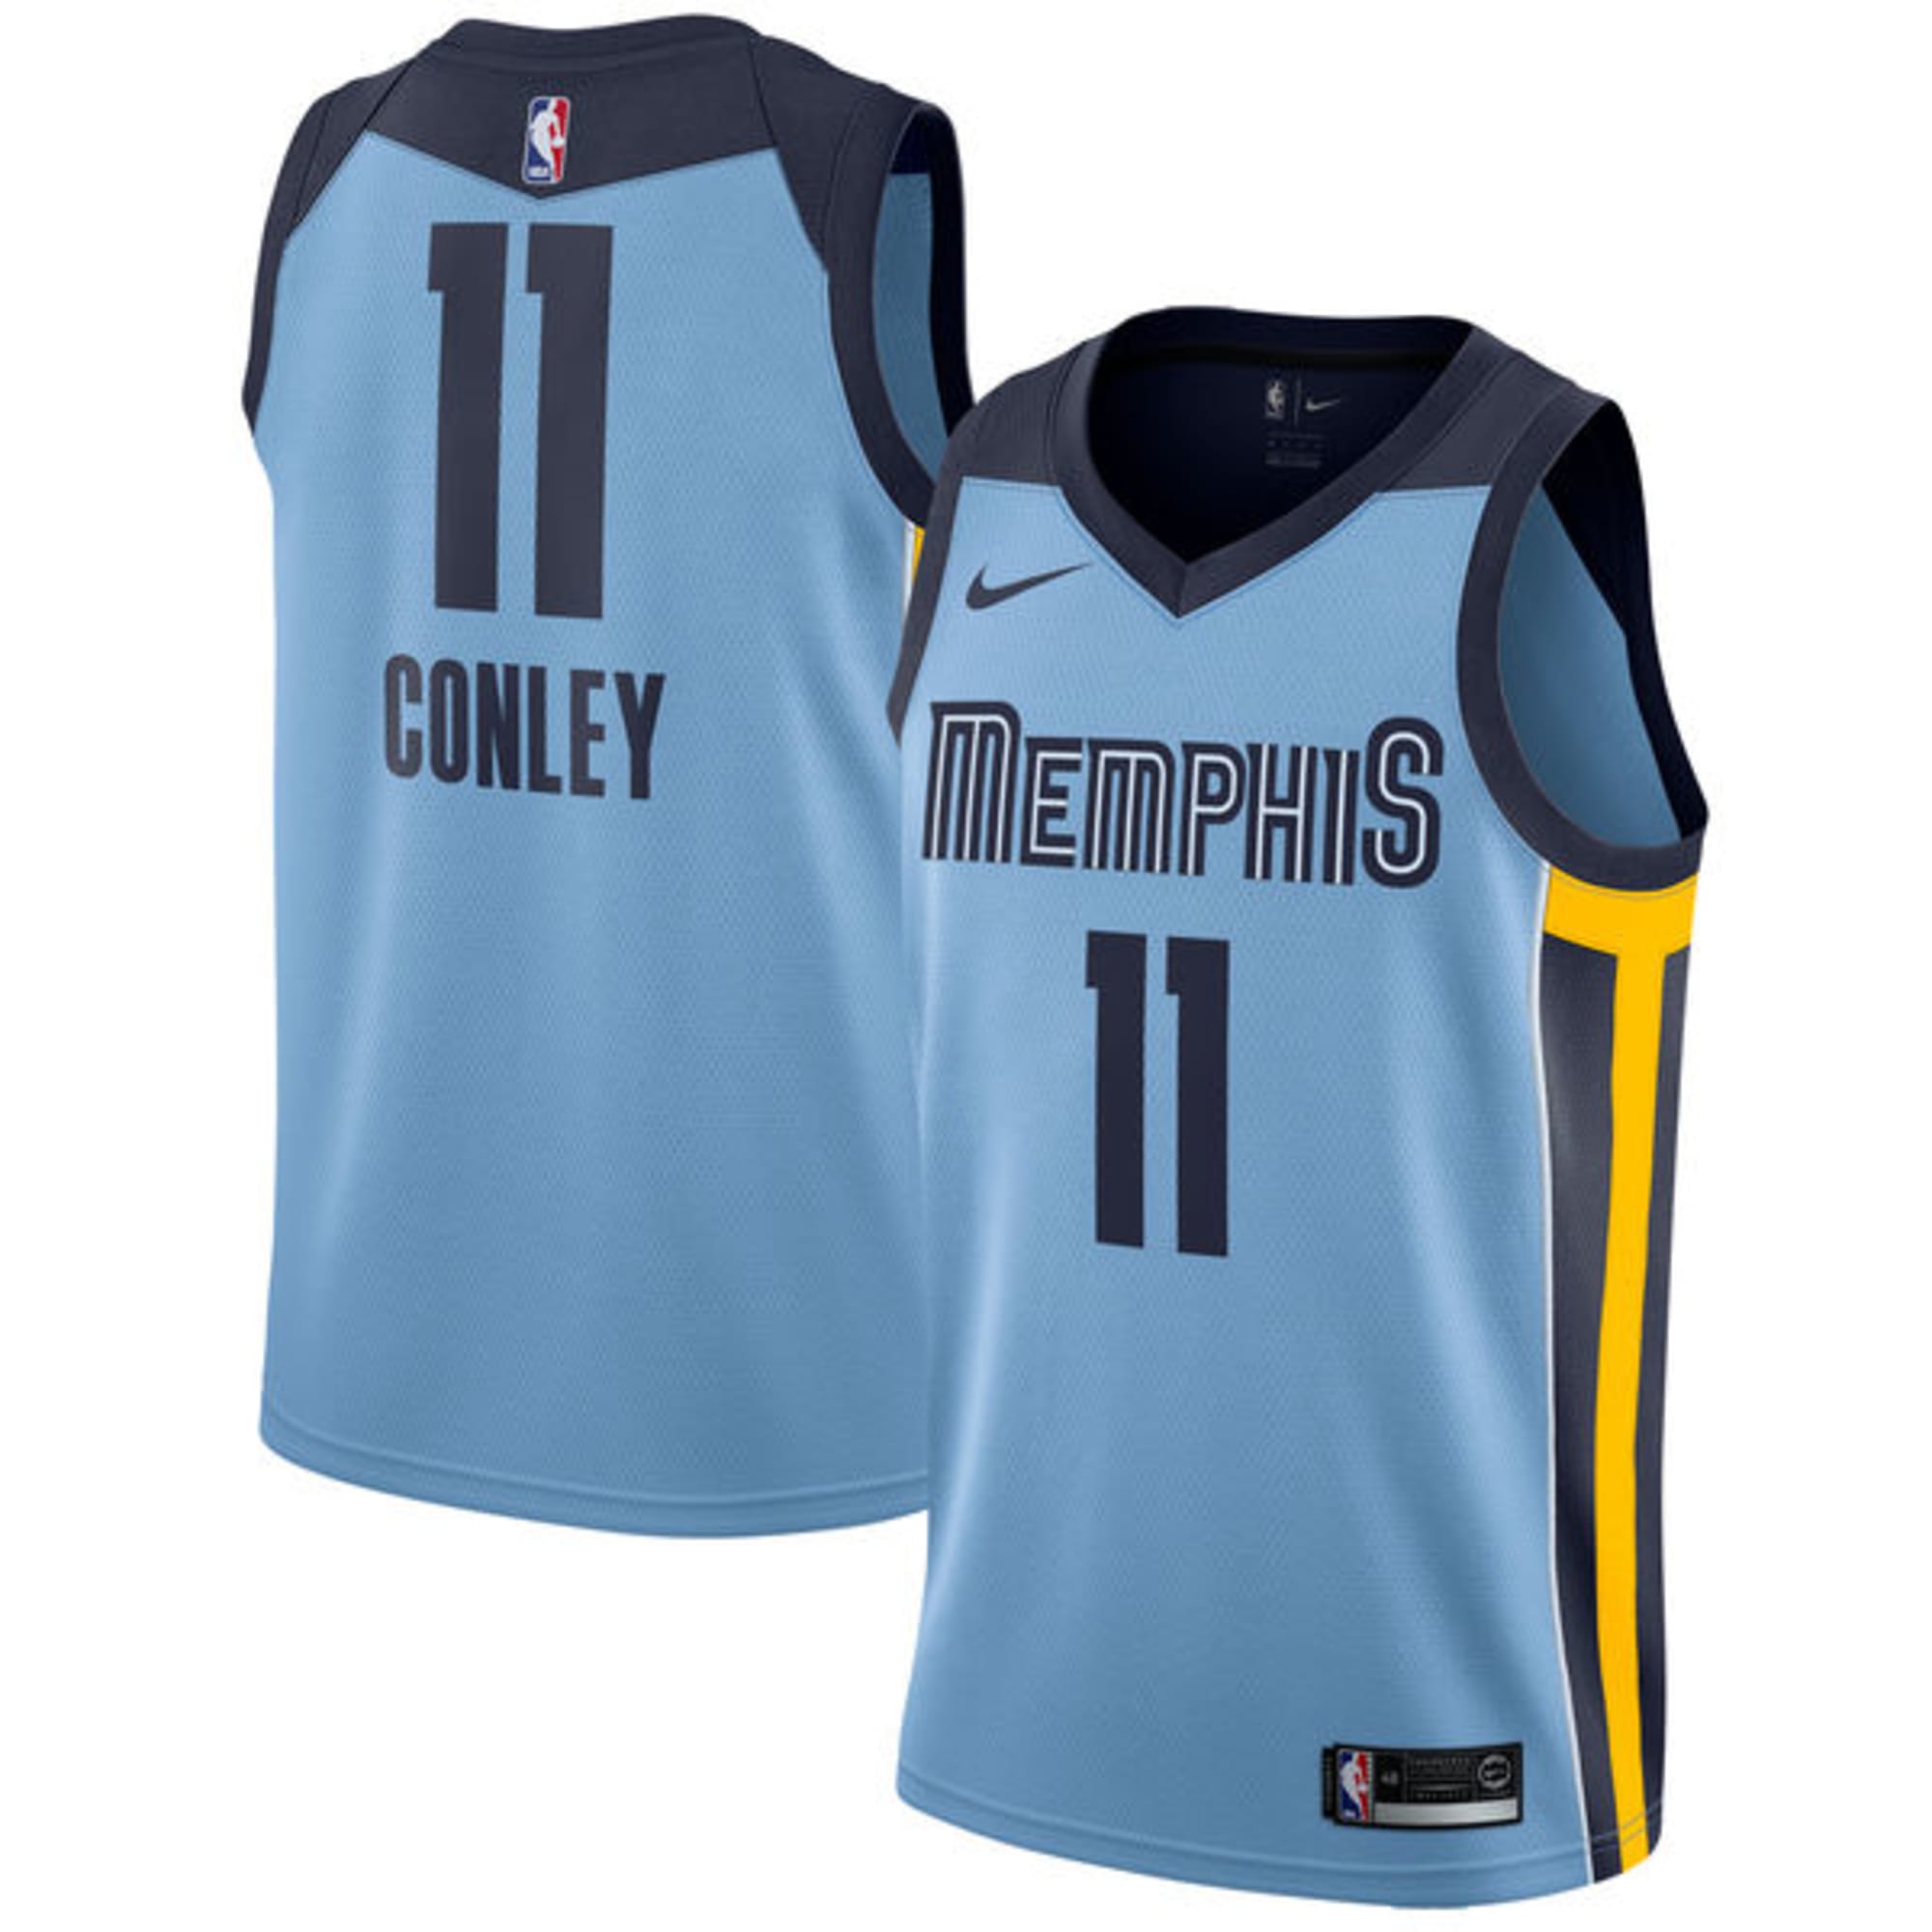 Nike Memphis Grizzlies Mike Conley #11 NBA Swingman Jersey Size 52 XL MIP  MVP?